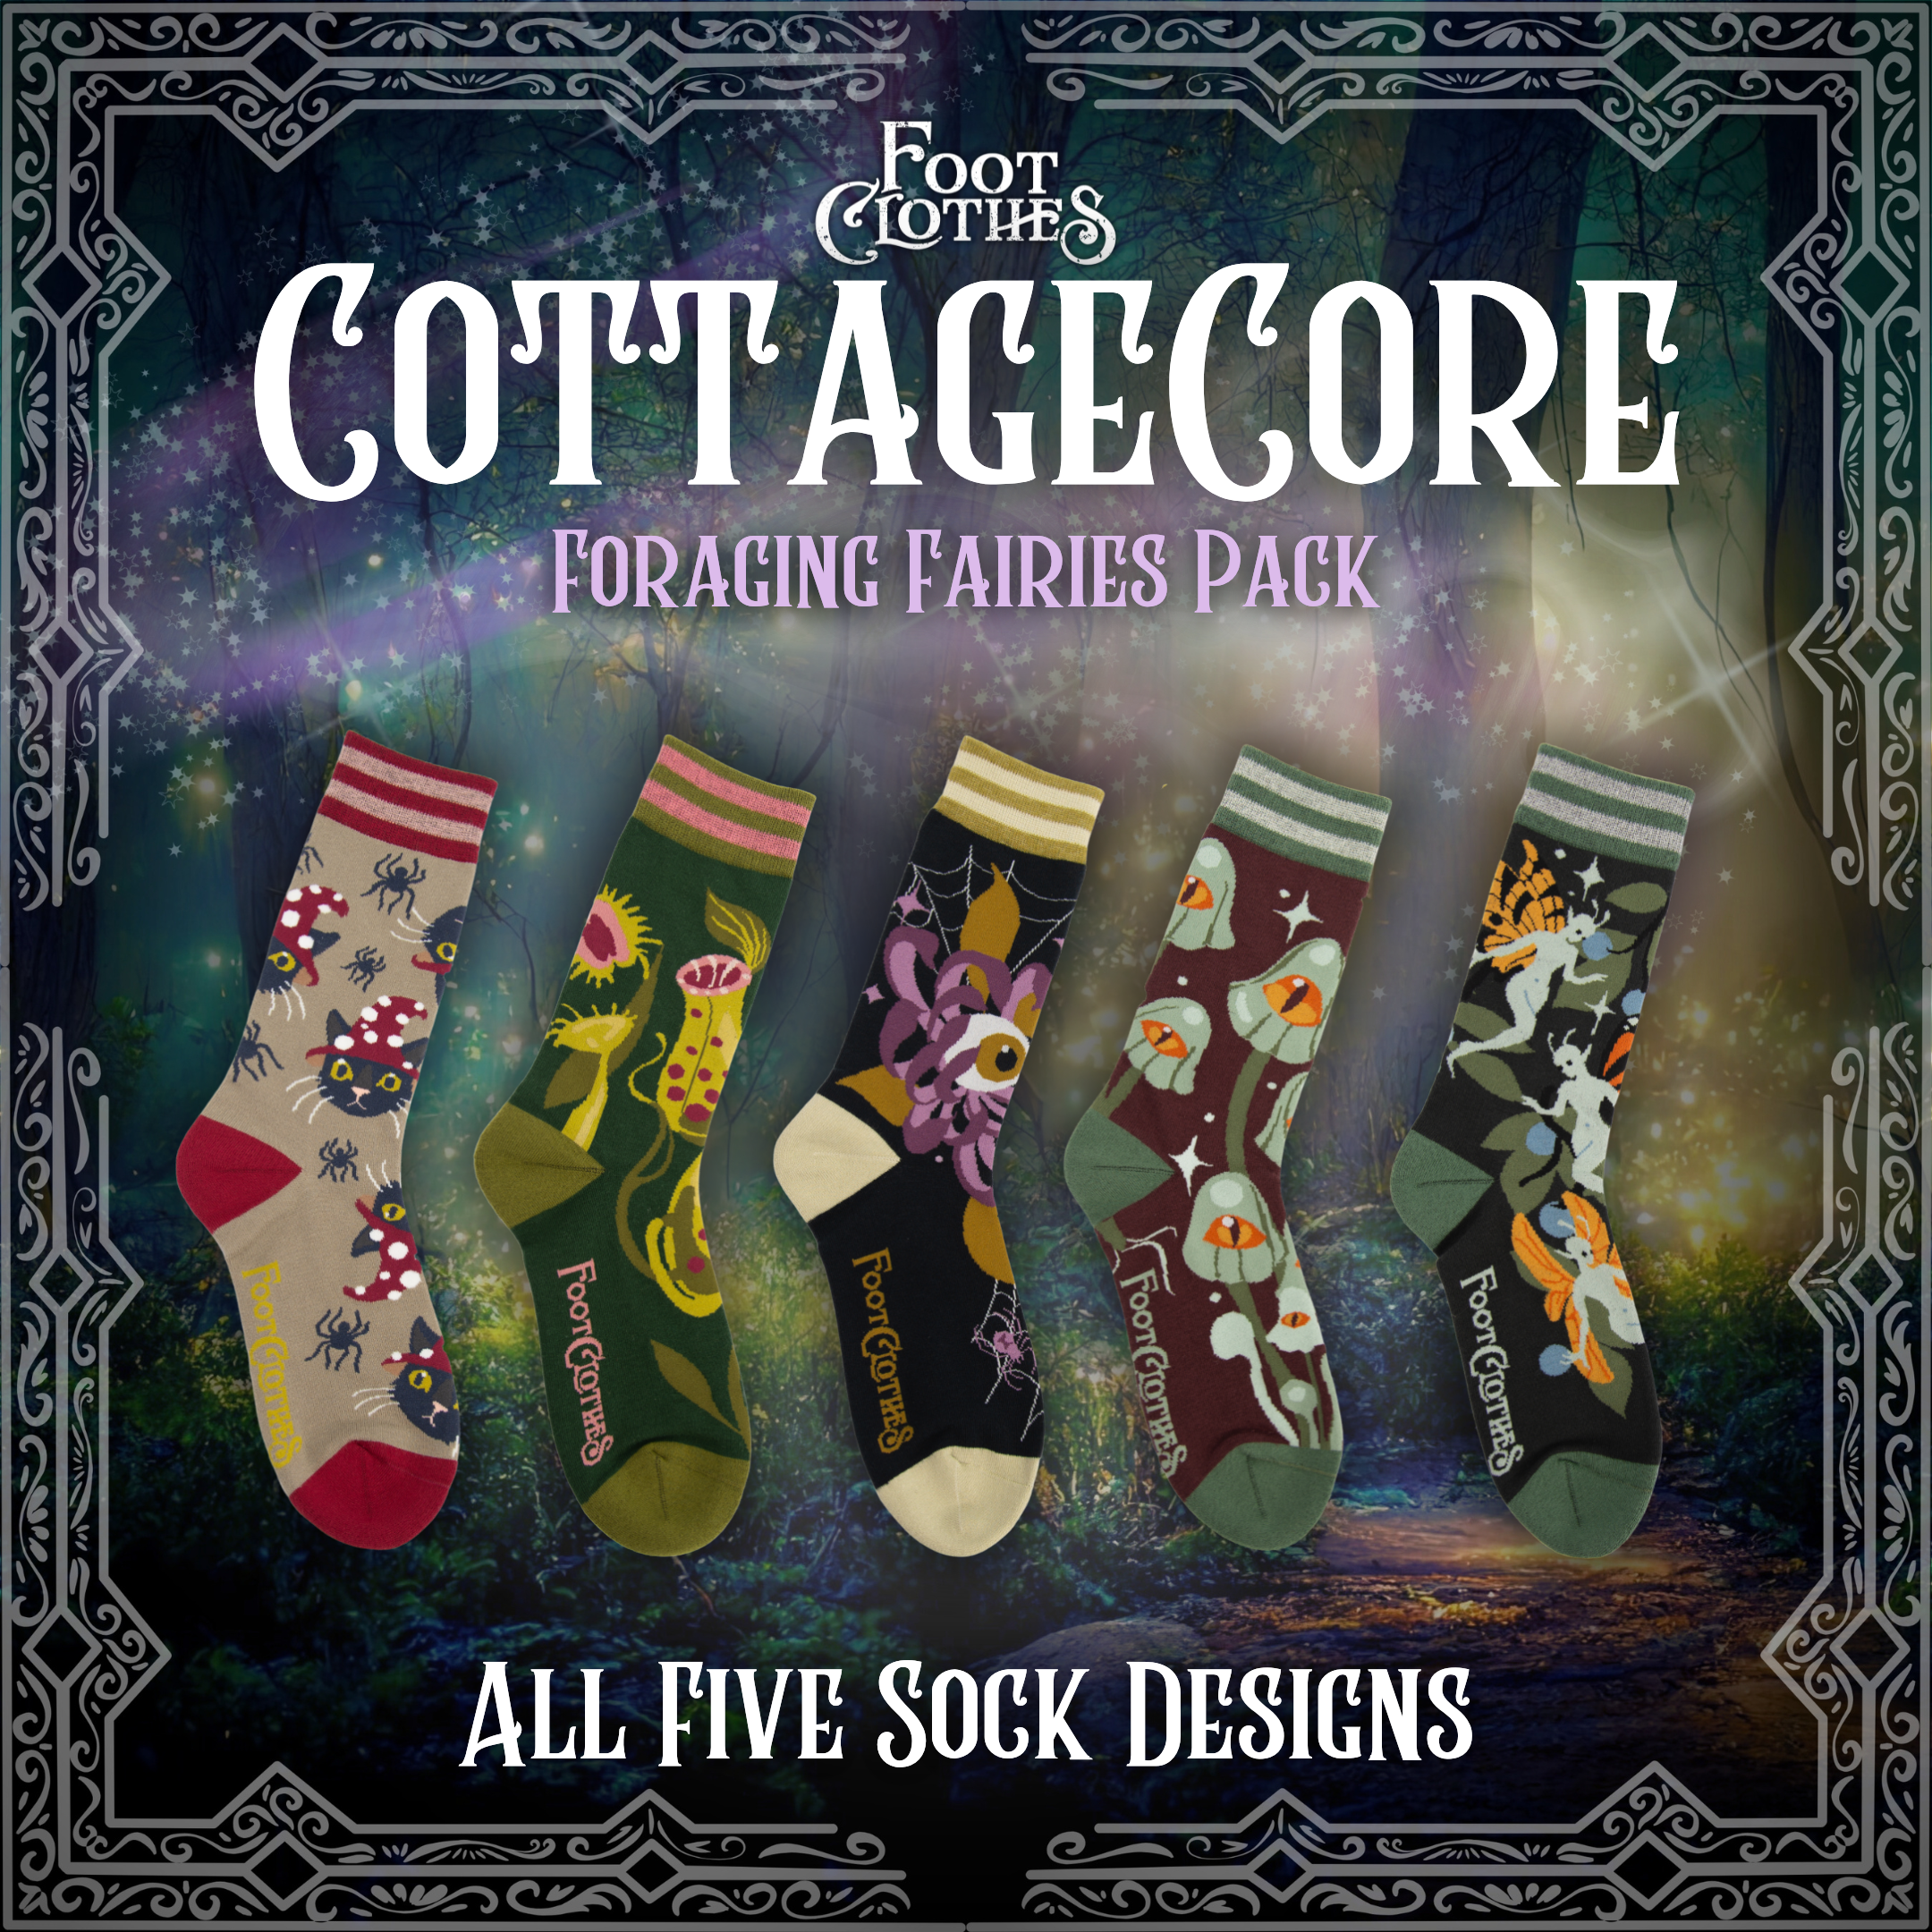 Cottagecore | FootClothes